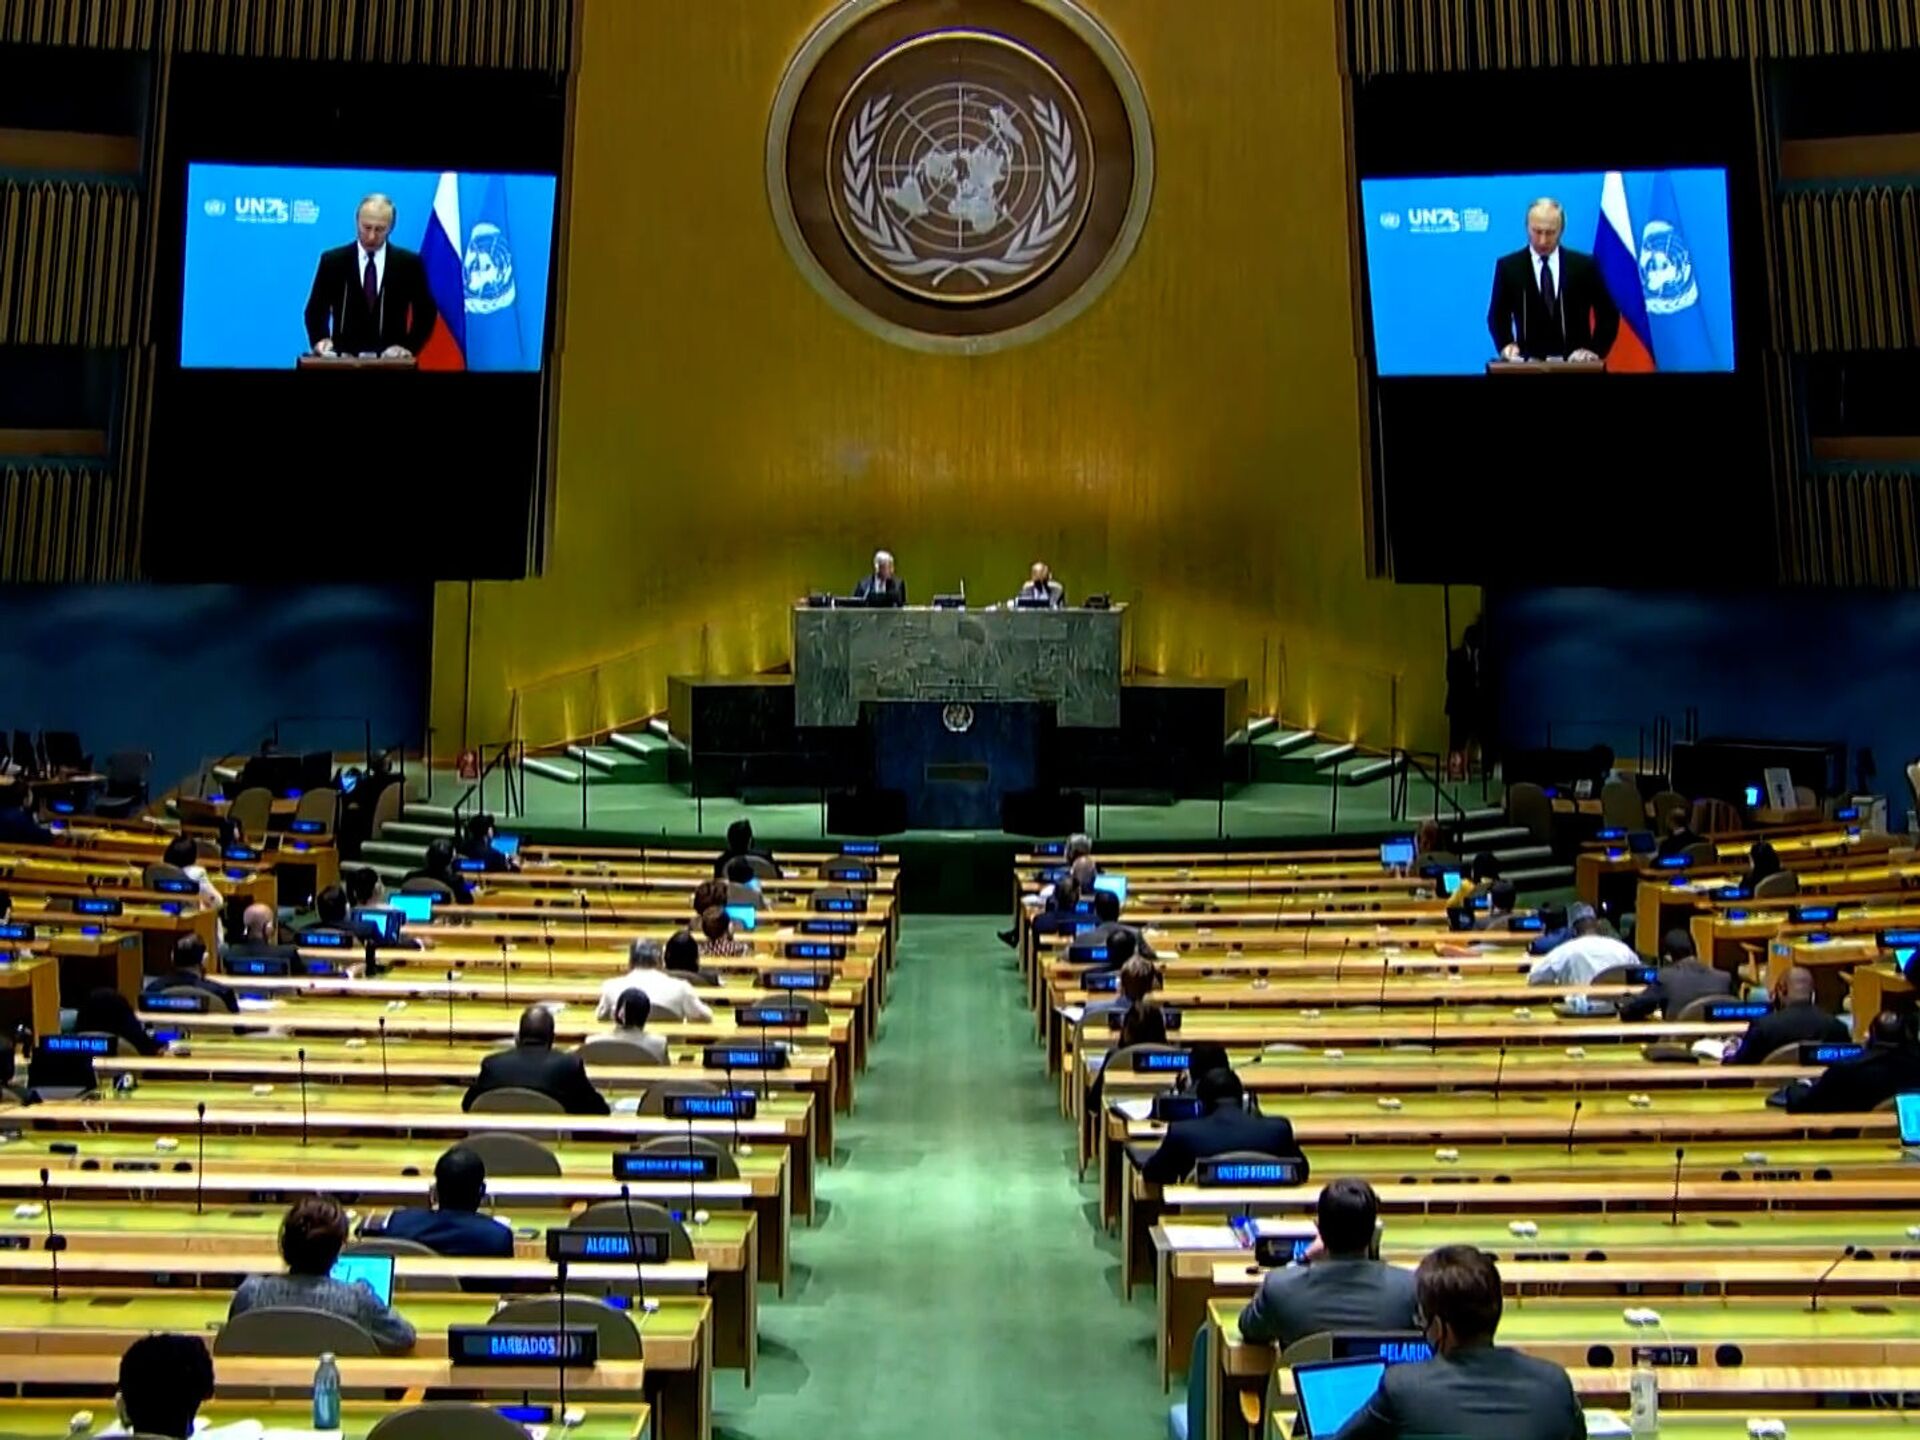 33 оон. Зал Генеральной Ассамблеи ООН. Зал заседания Генеральной Ассамблеи ООН. Сессия Генеральной Ассамблеи ООН. 75 Генассамблея ООН.